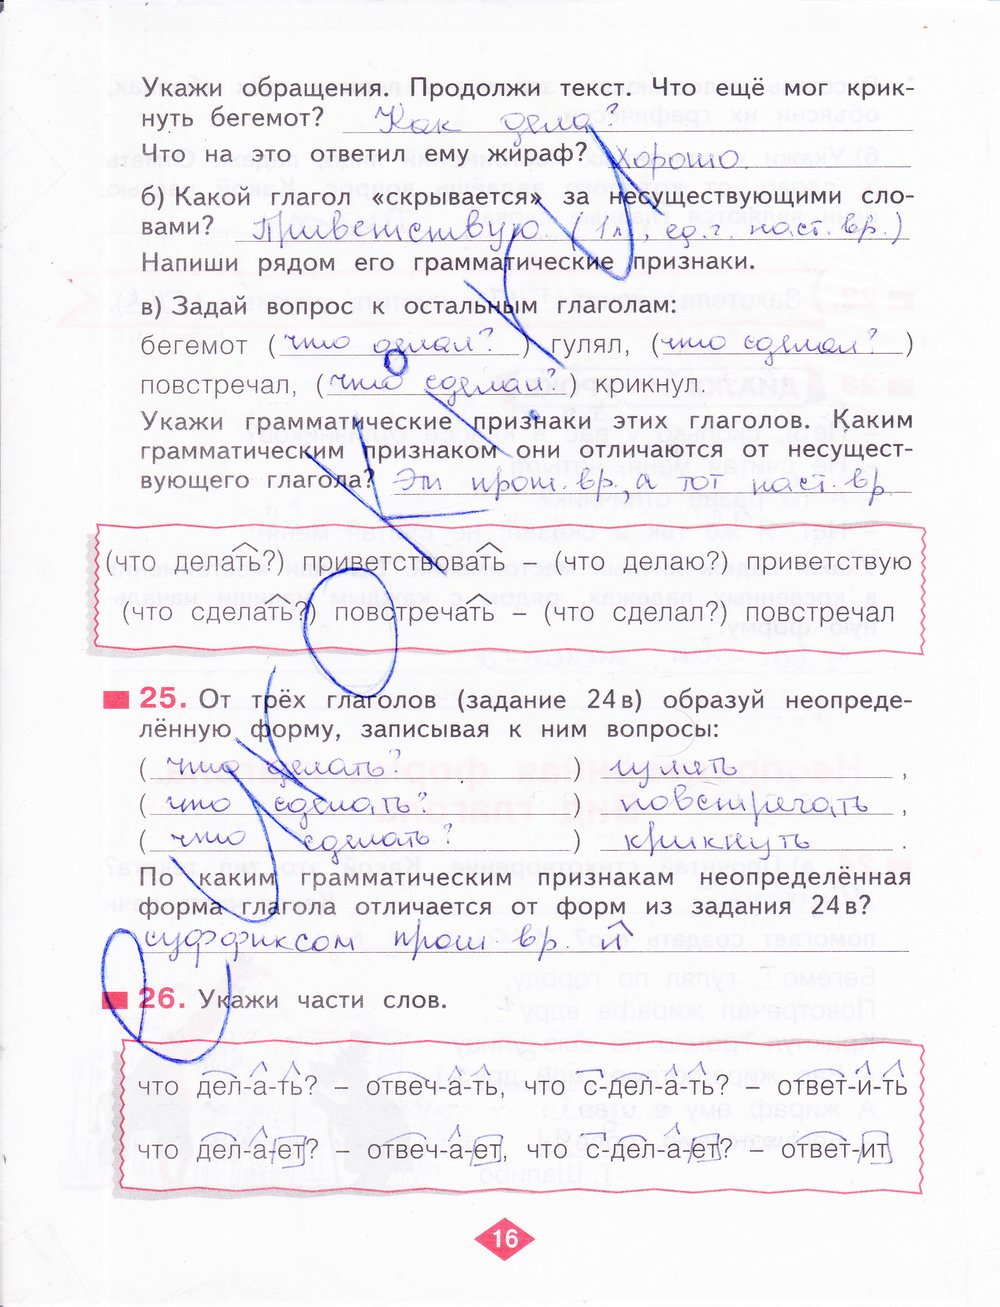 гдз 4 класс рабочая тетрадь часть 2 страница 16 русский язык Нечаева, Воскресенская